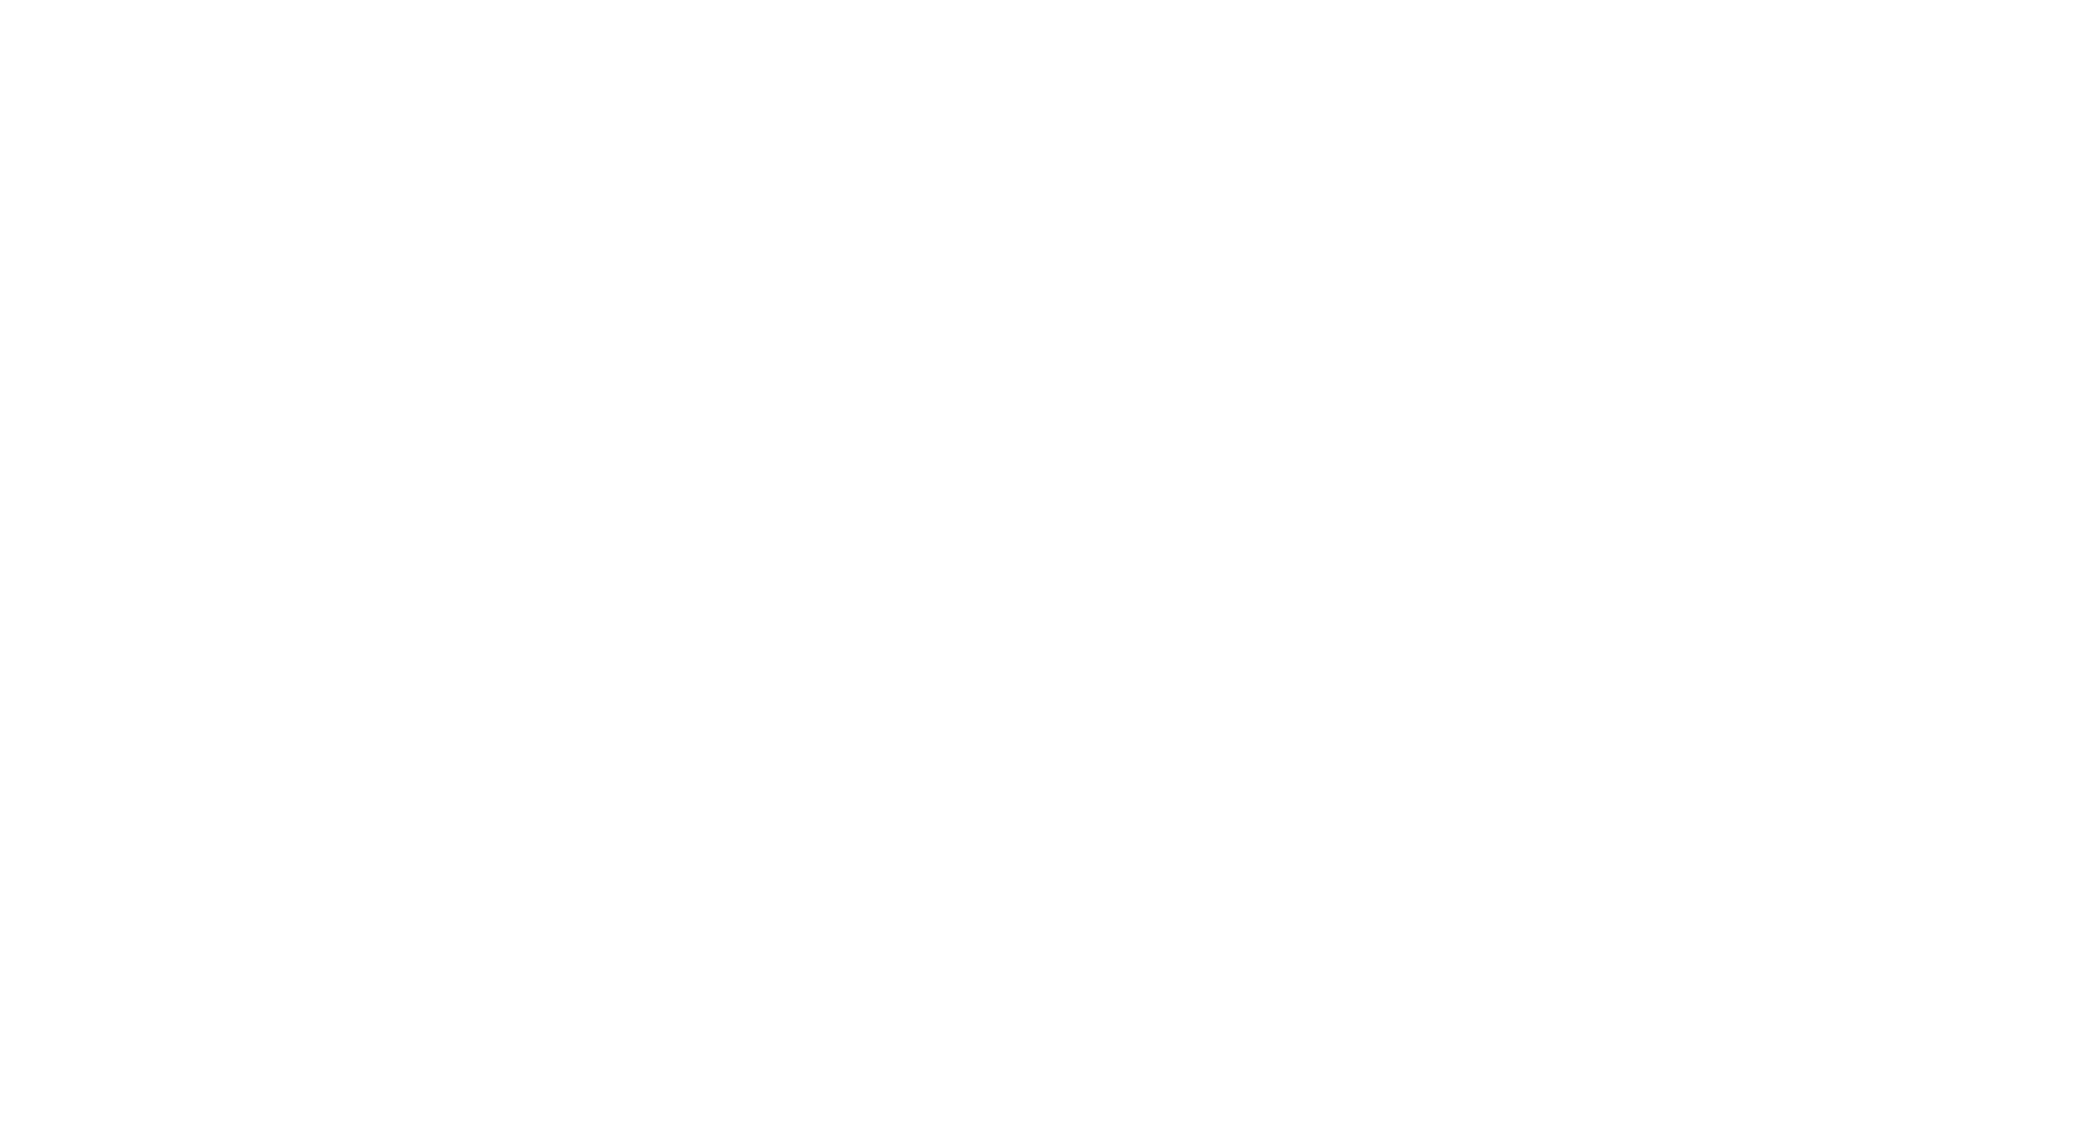 Cotton On Body logo